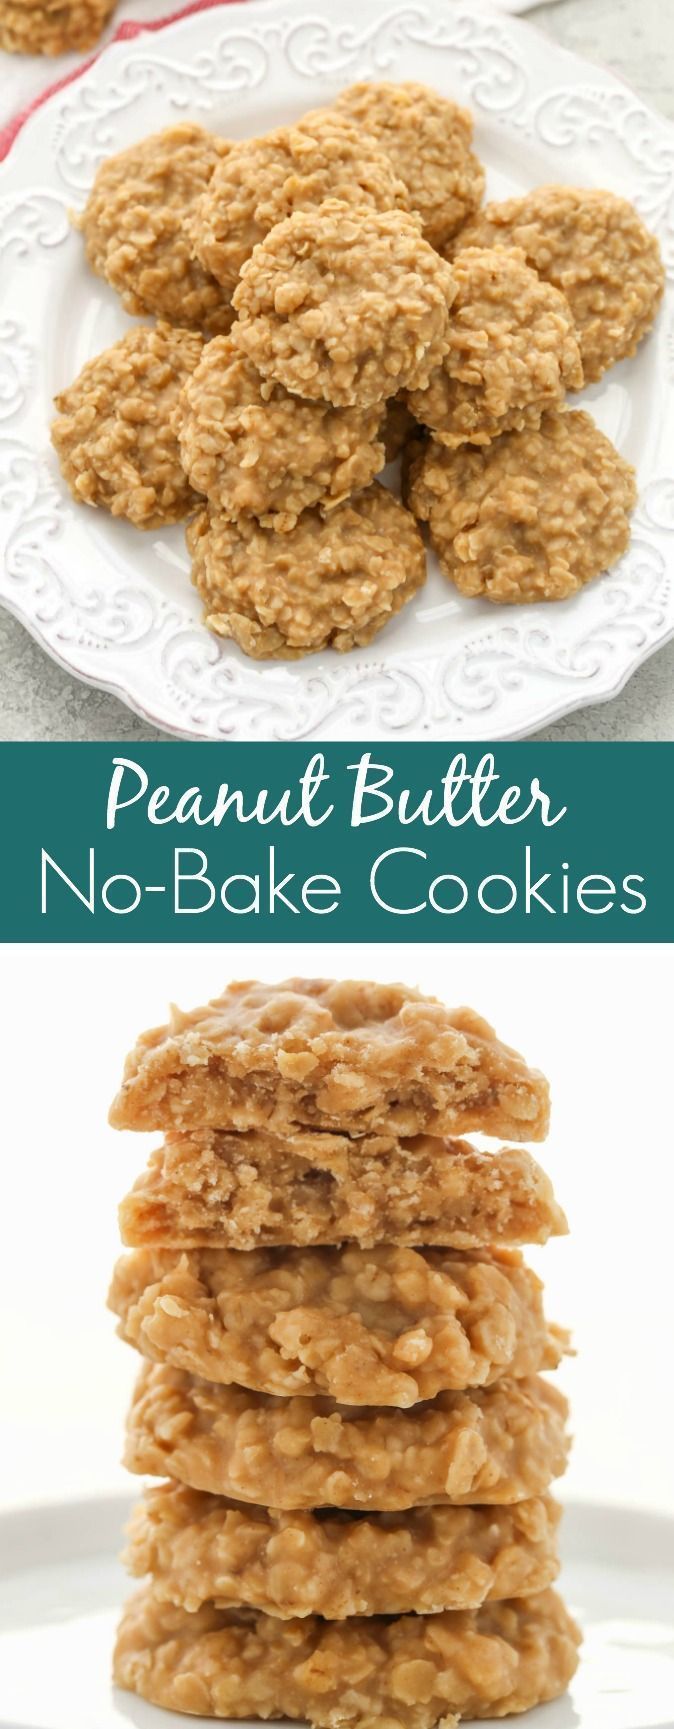 Peanut Butter No-Bake Cookies - Live Well Bake Often -   16 peanut butter desserts Healthy ideas